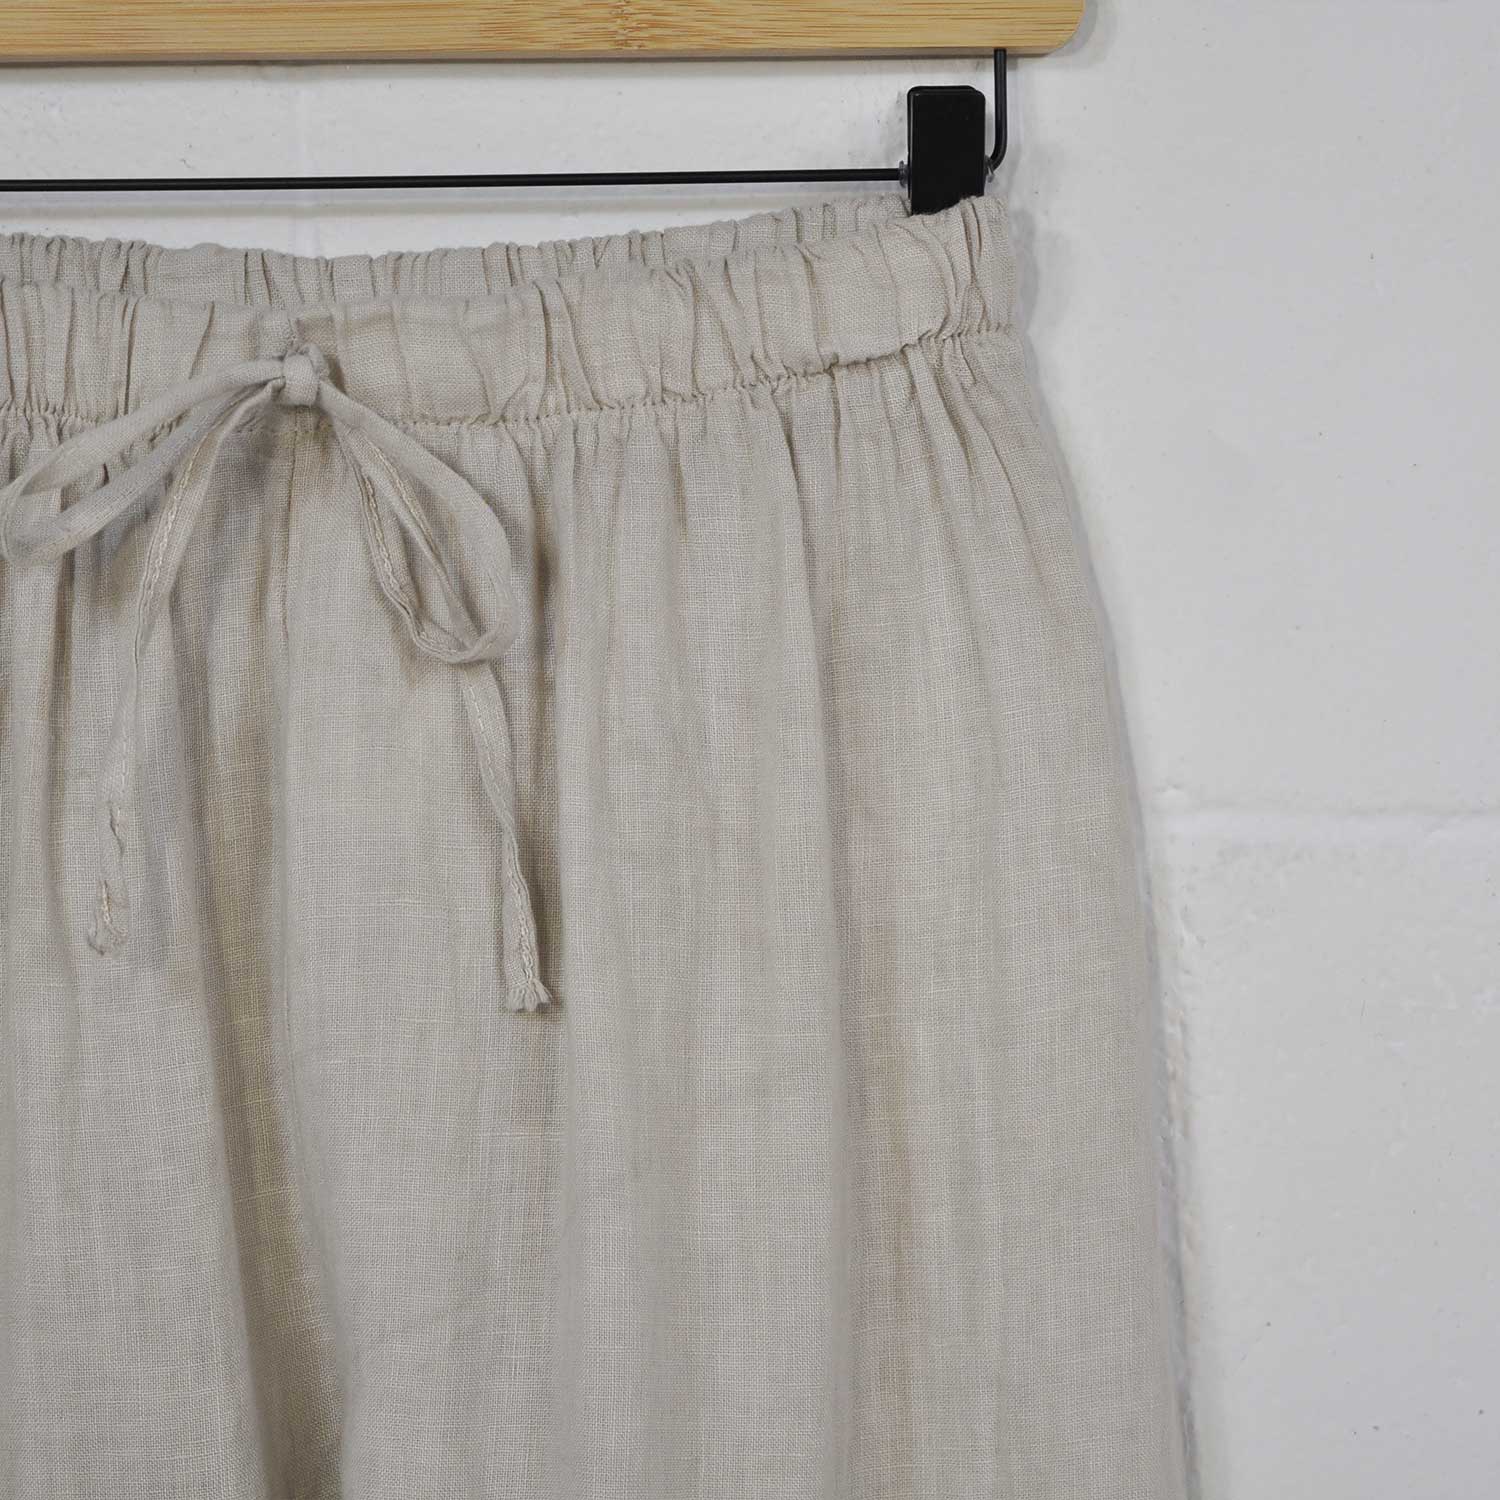 Pantalón ancho lino beige